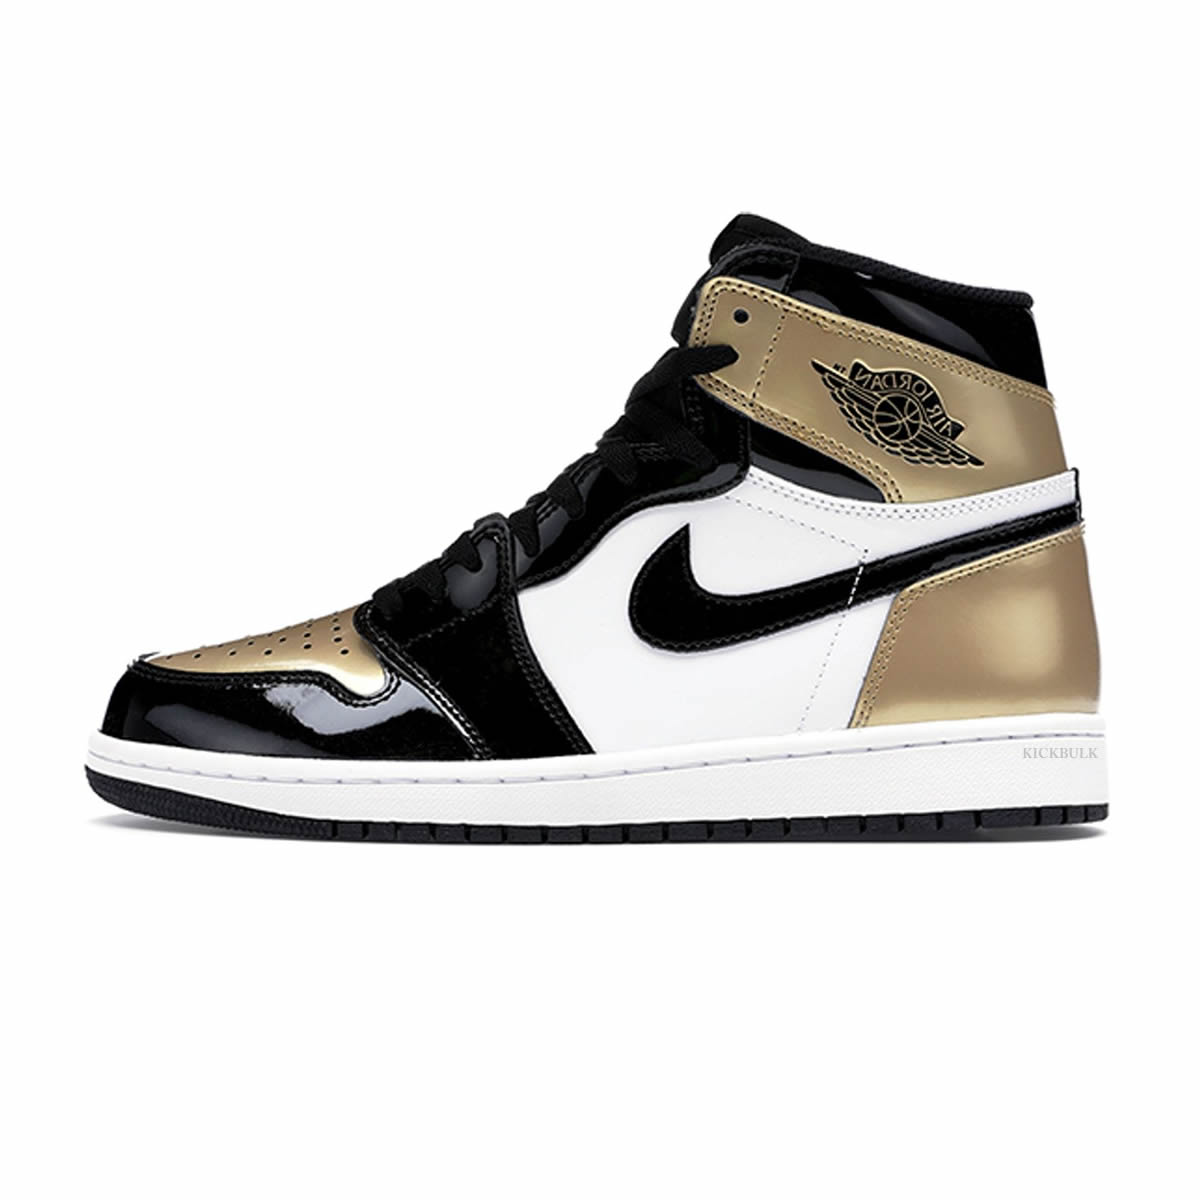 Nike Air Jordan 1 Retro High Og Gold Toe 861428 007 0 - www.kickbulk.org